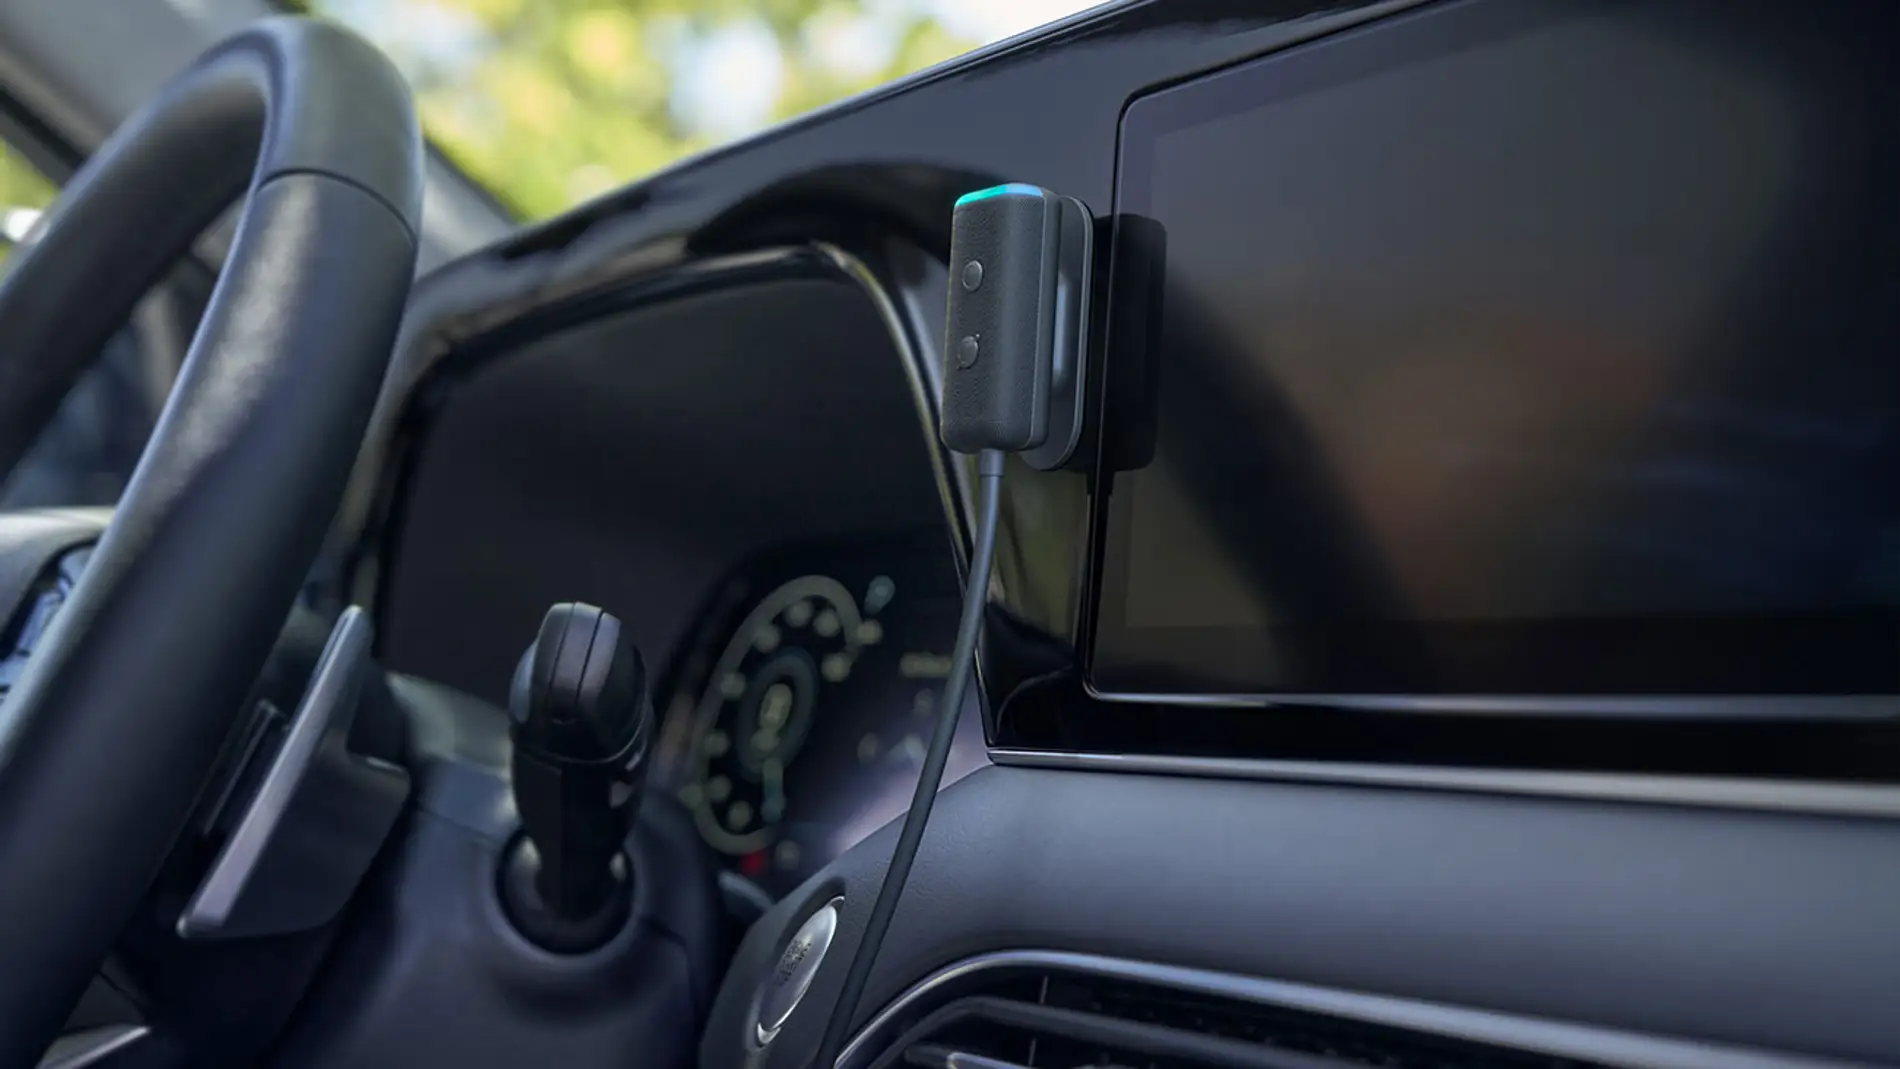 Echo Auto: así de sencillo es configurarlo en tu vehículo